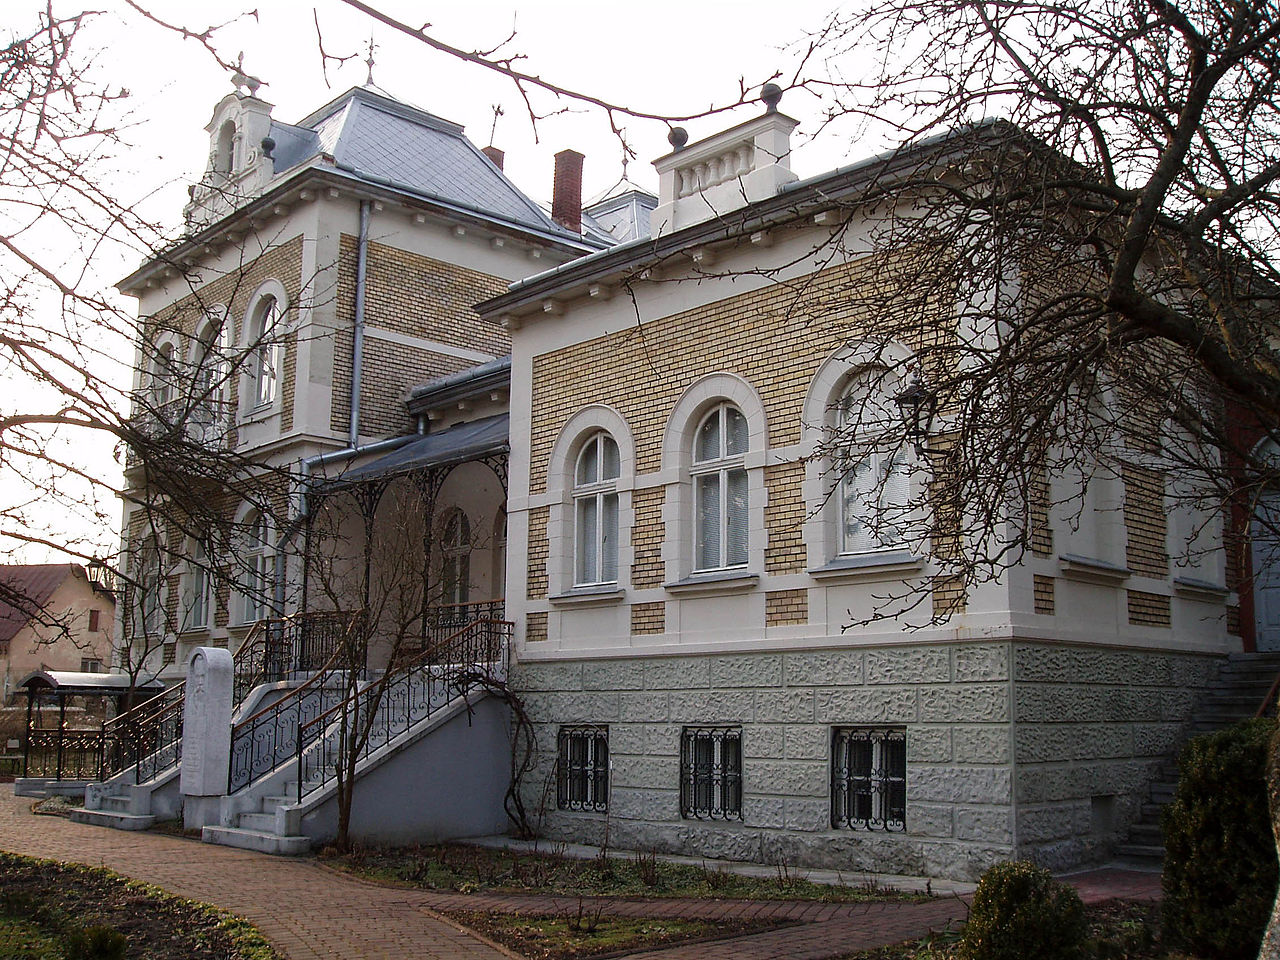 Будинок Михайла Грушевського у Львові, тепер Меморіальний музей вченого
